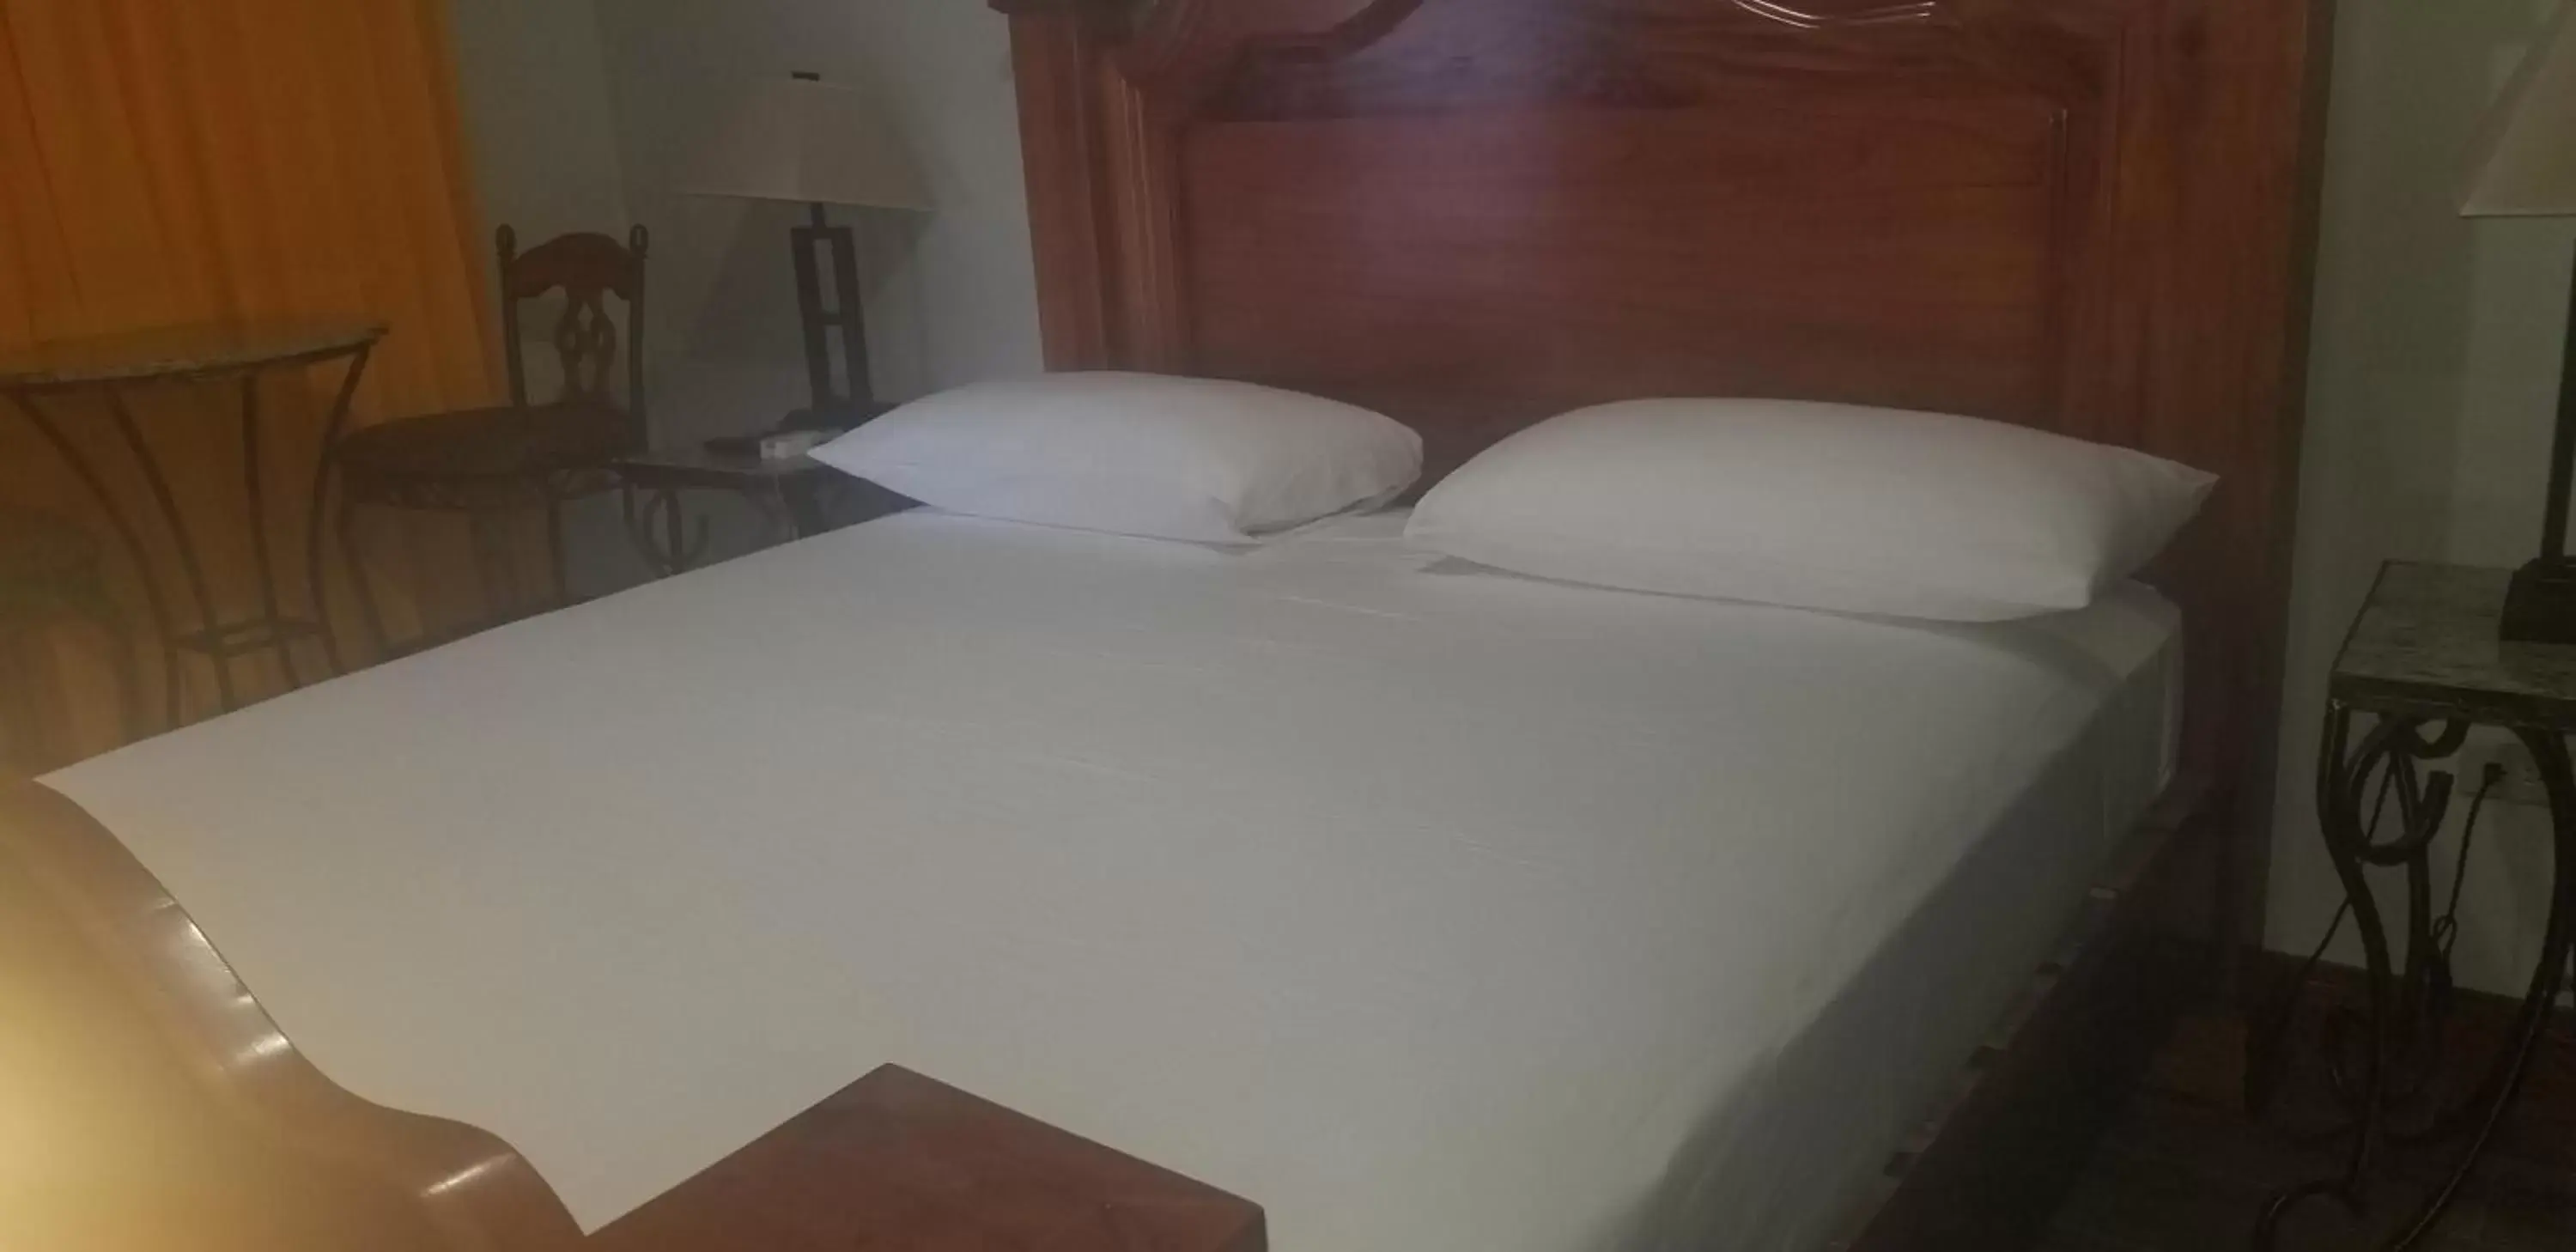 Bedroom, Bed in Spanish Dream Hotel